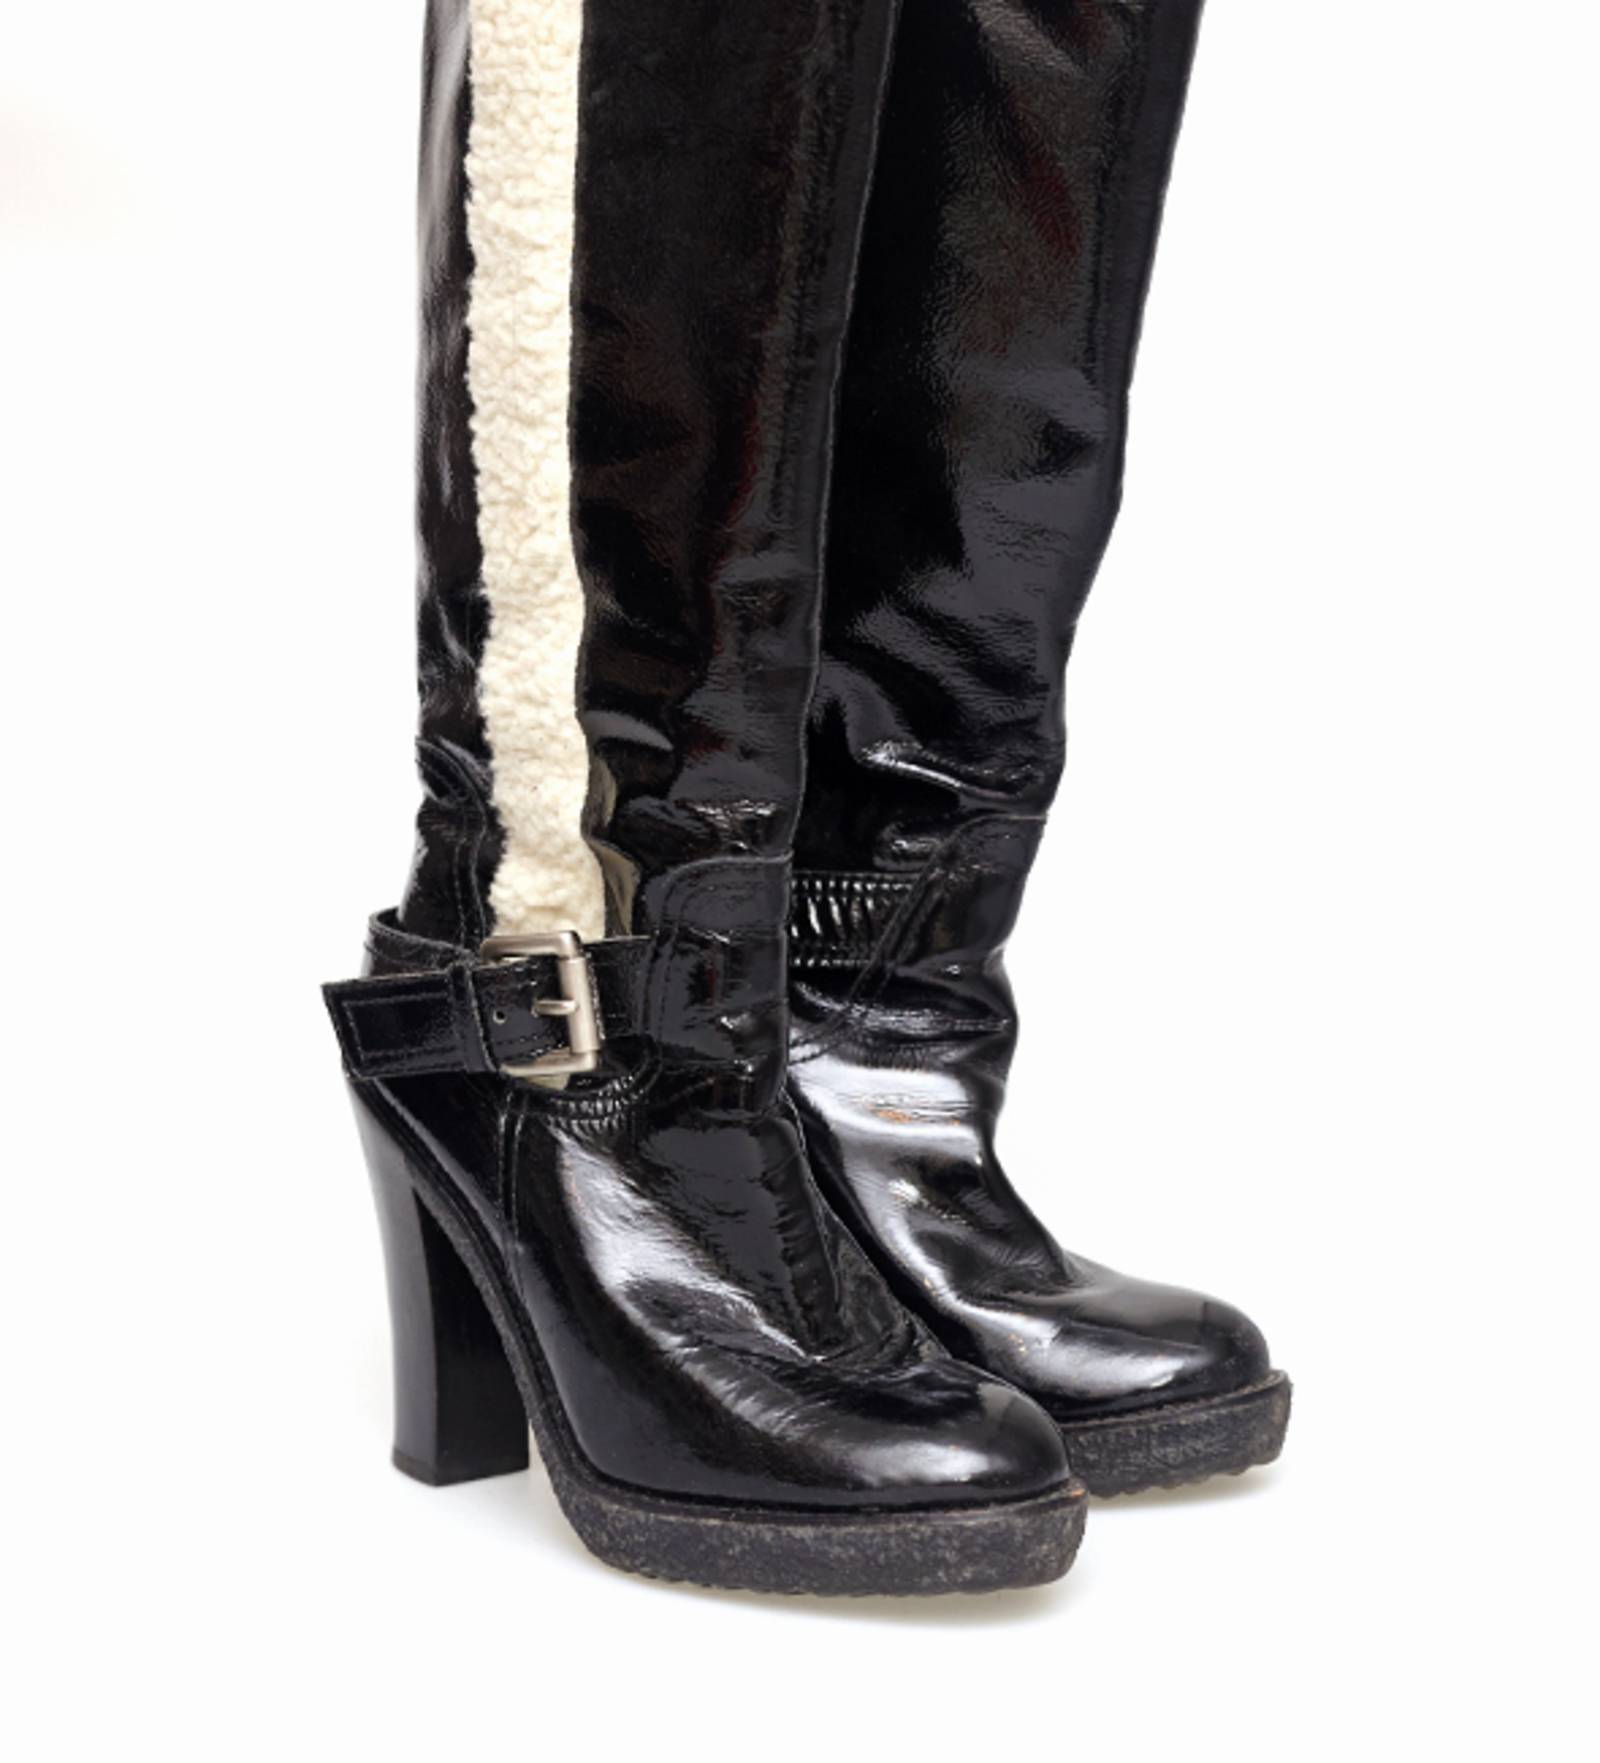 Черные армейские сапоги для женщин Michael Kors  огромный выбор по лучшим  ценам  eBay